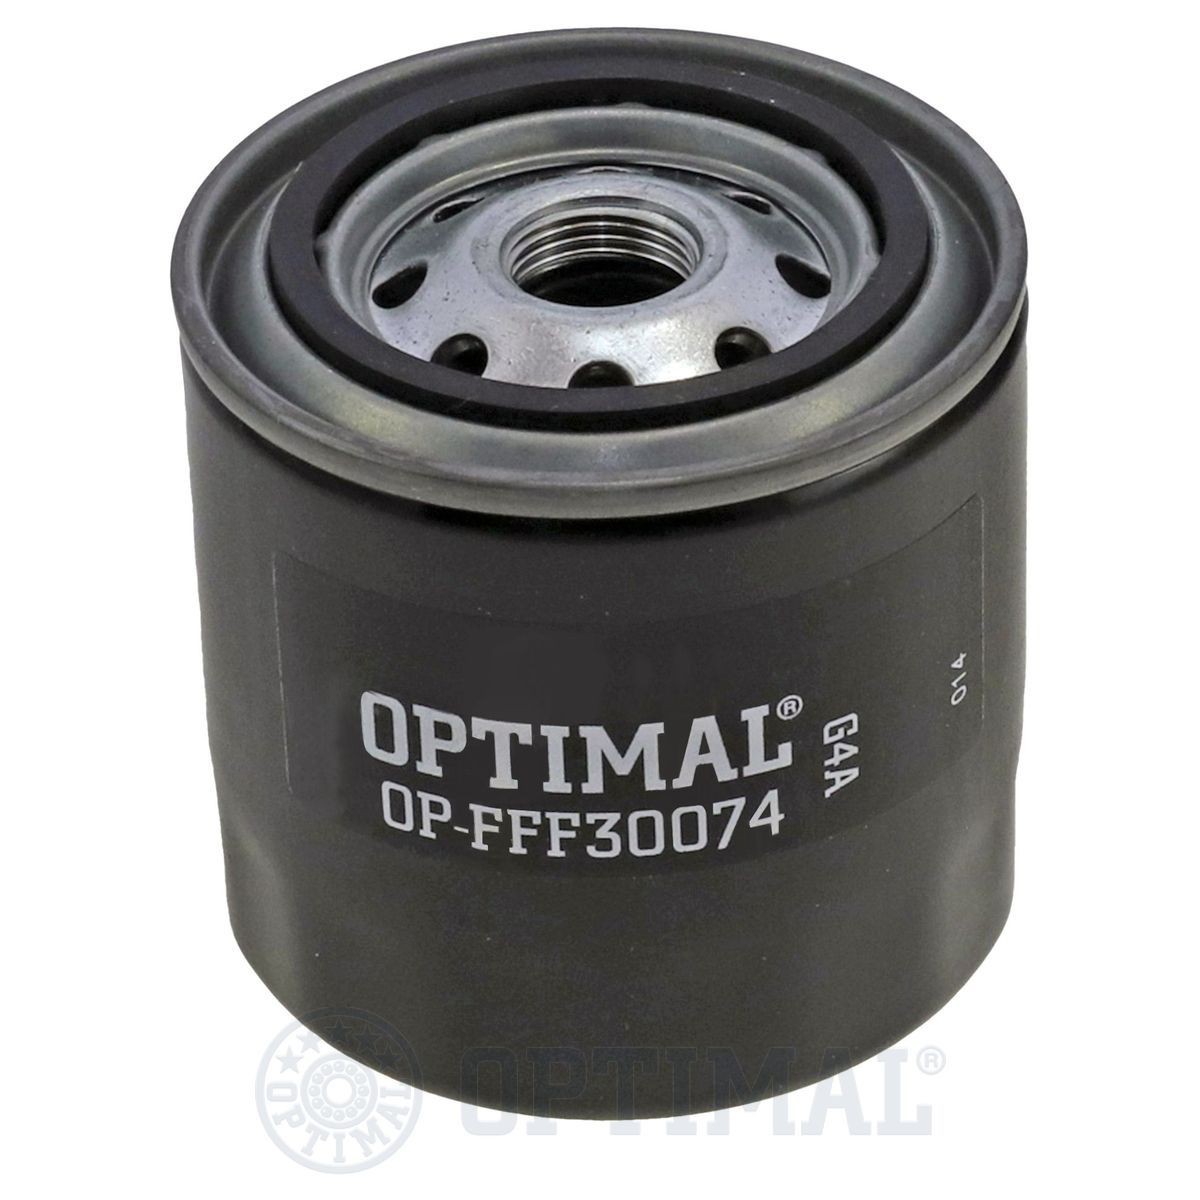 OPTIMAL OP-FFF30074 Fuel filter 600-311-7441